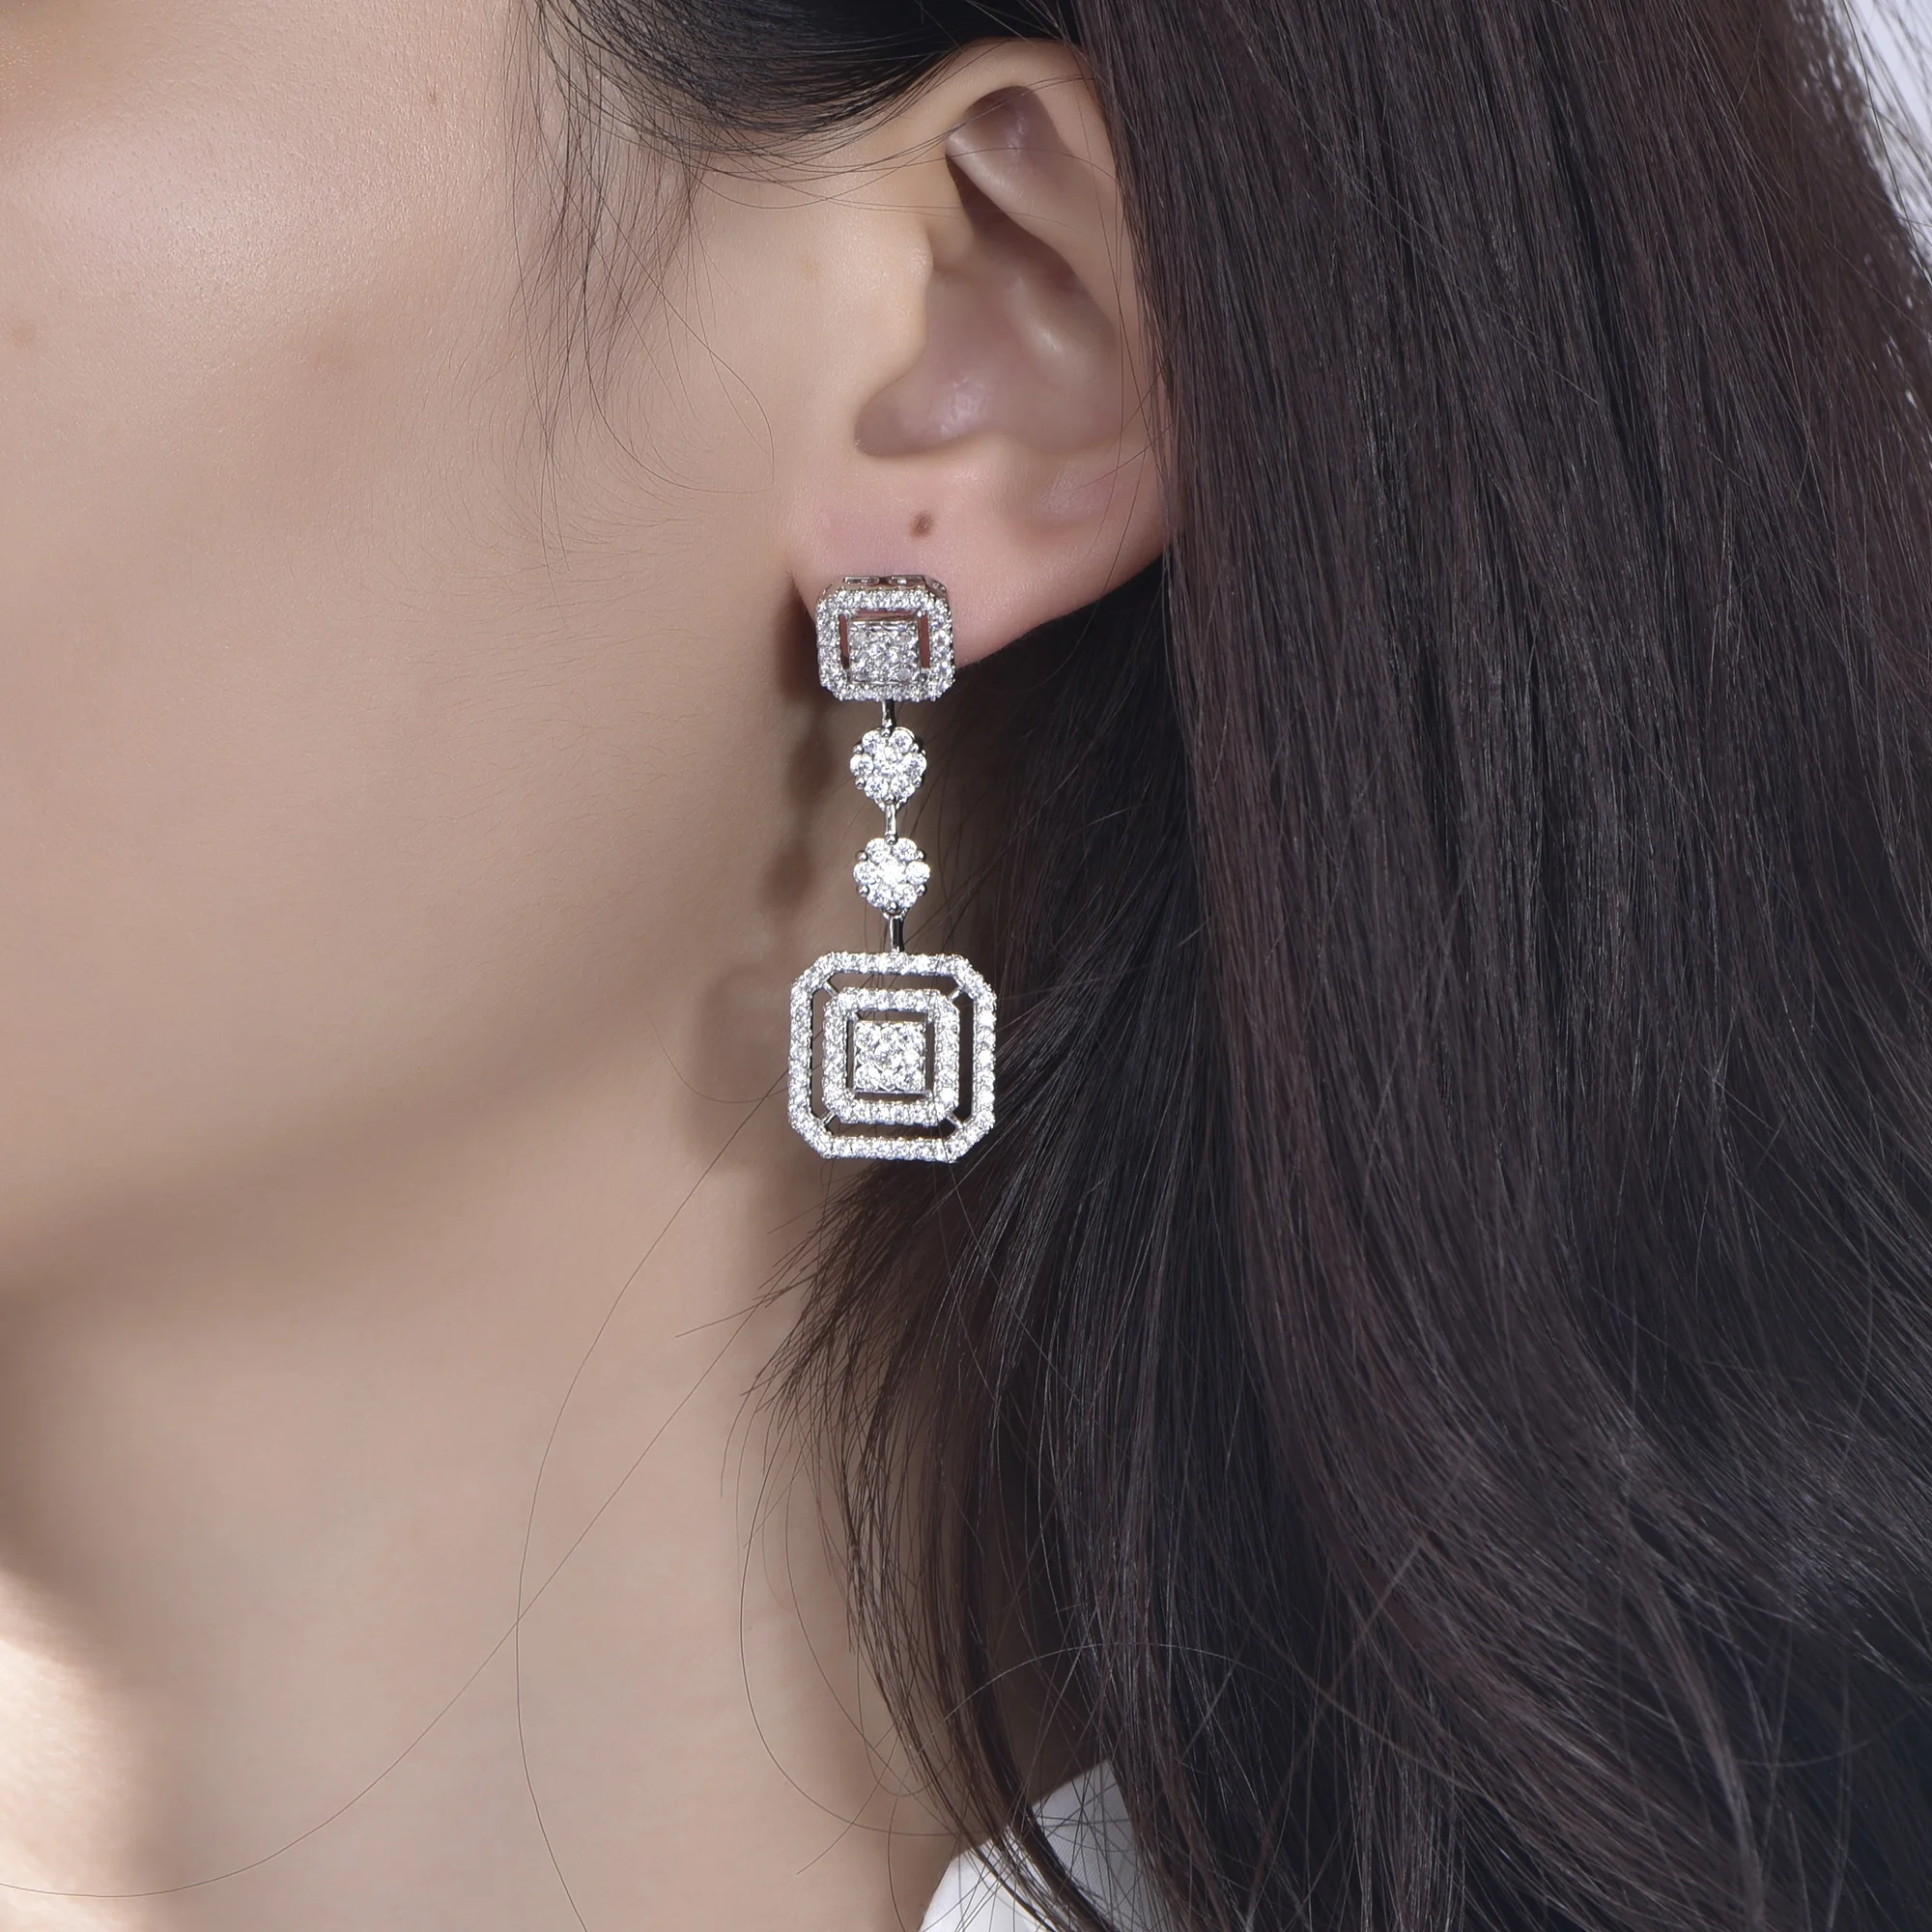 925 sterling silver earrings trendy women jewelry square shaped 5a cubic zirconia earrings dangle earrings